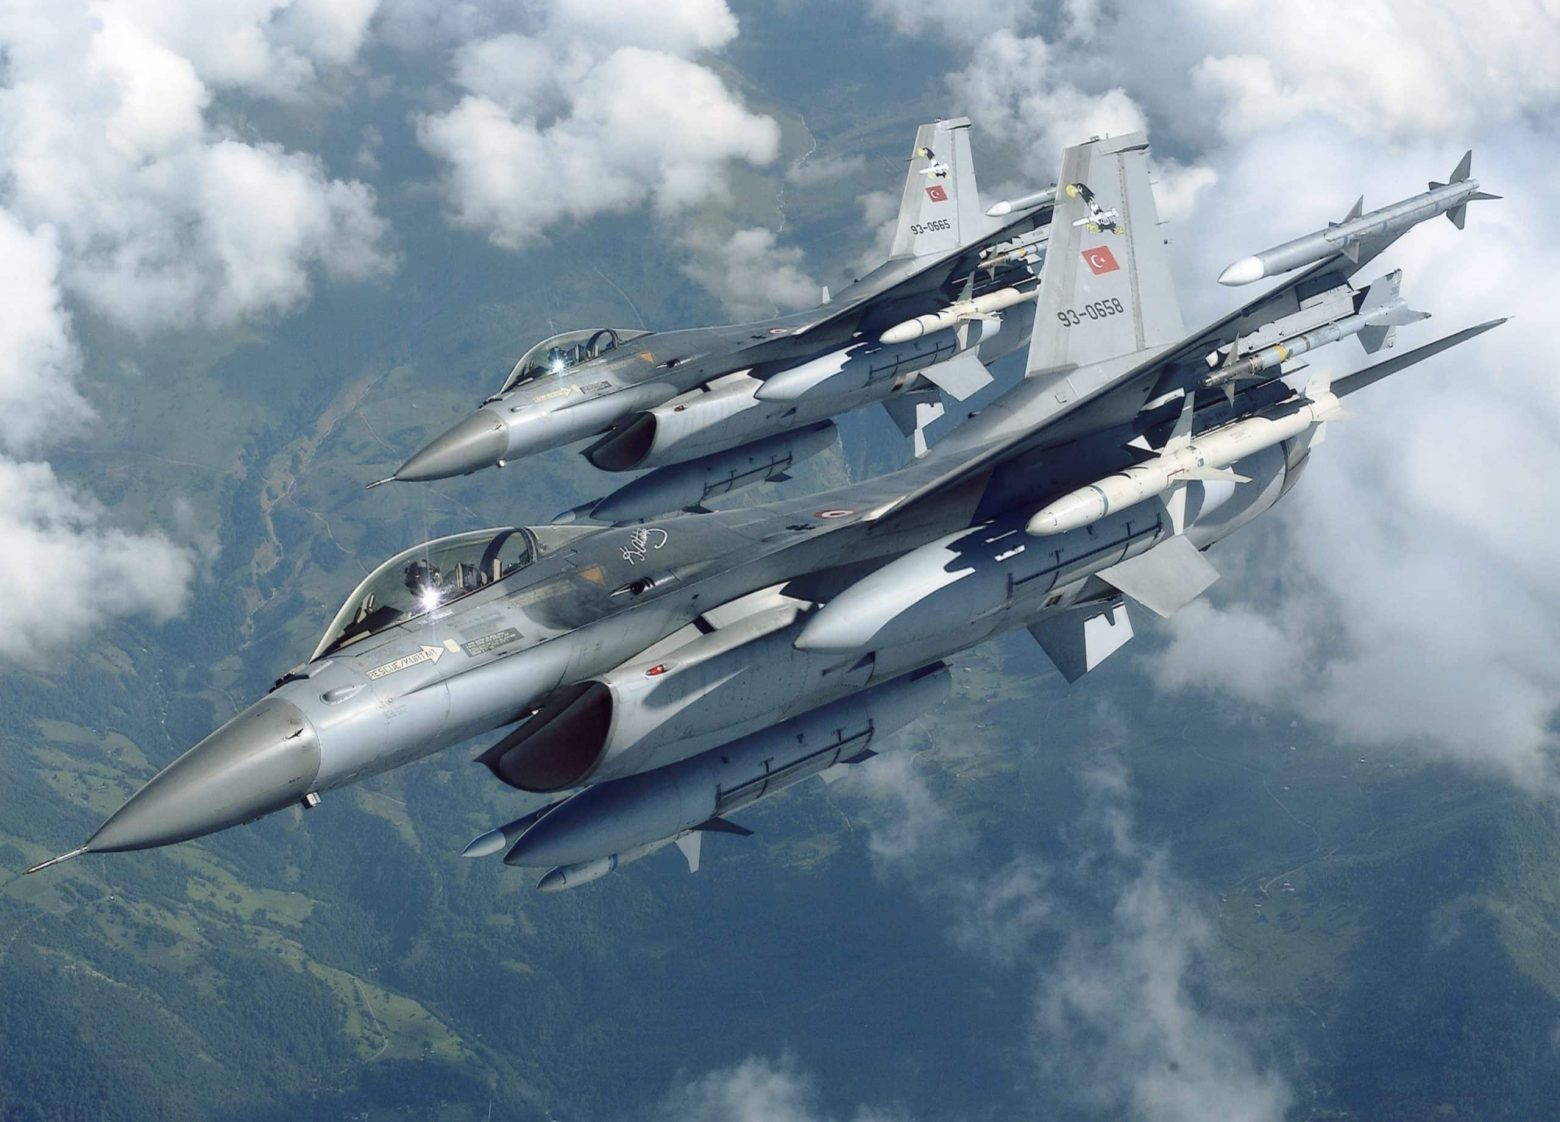 Νέες προκλήσεις από την Τουρκία: Ισχυρίζεται ότι ελληνικοί S-300 «λόκαραν» τουρκικό F-16